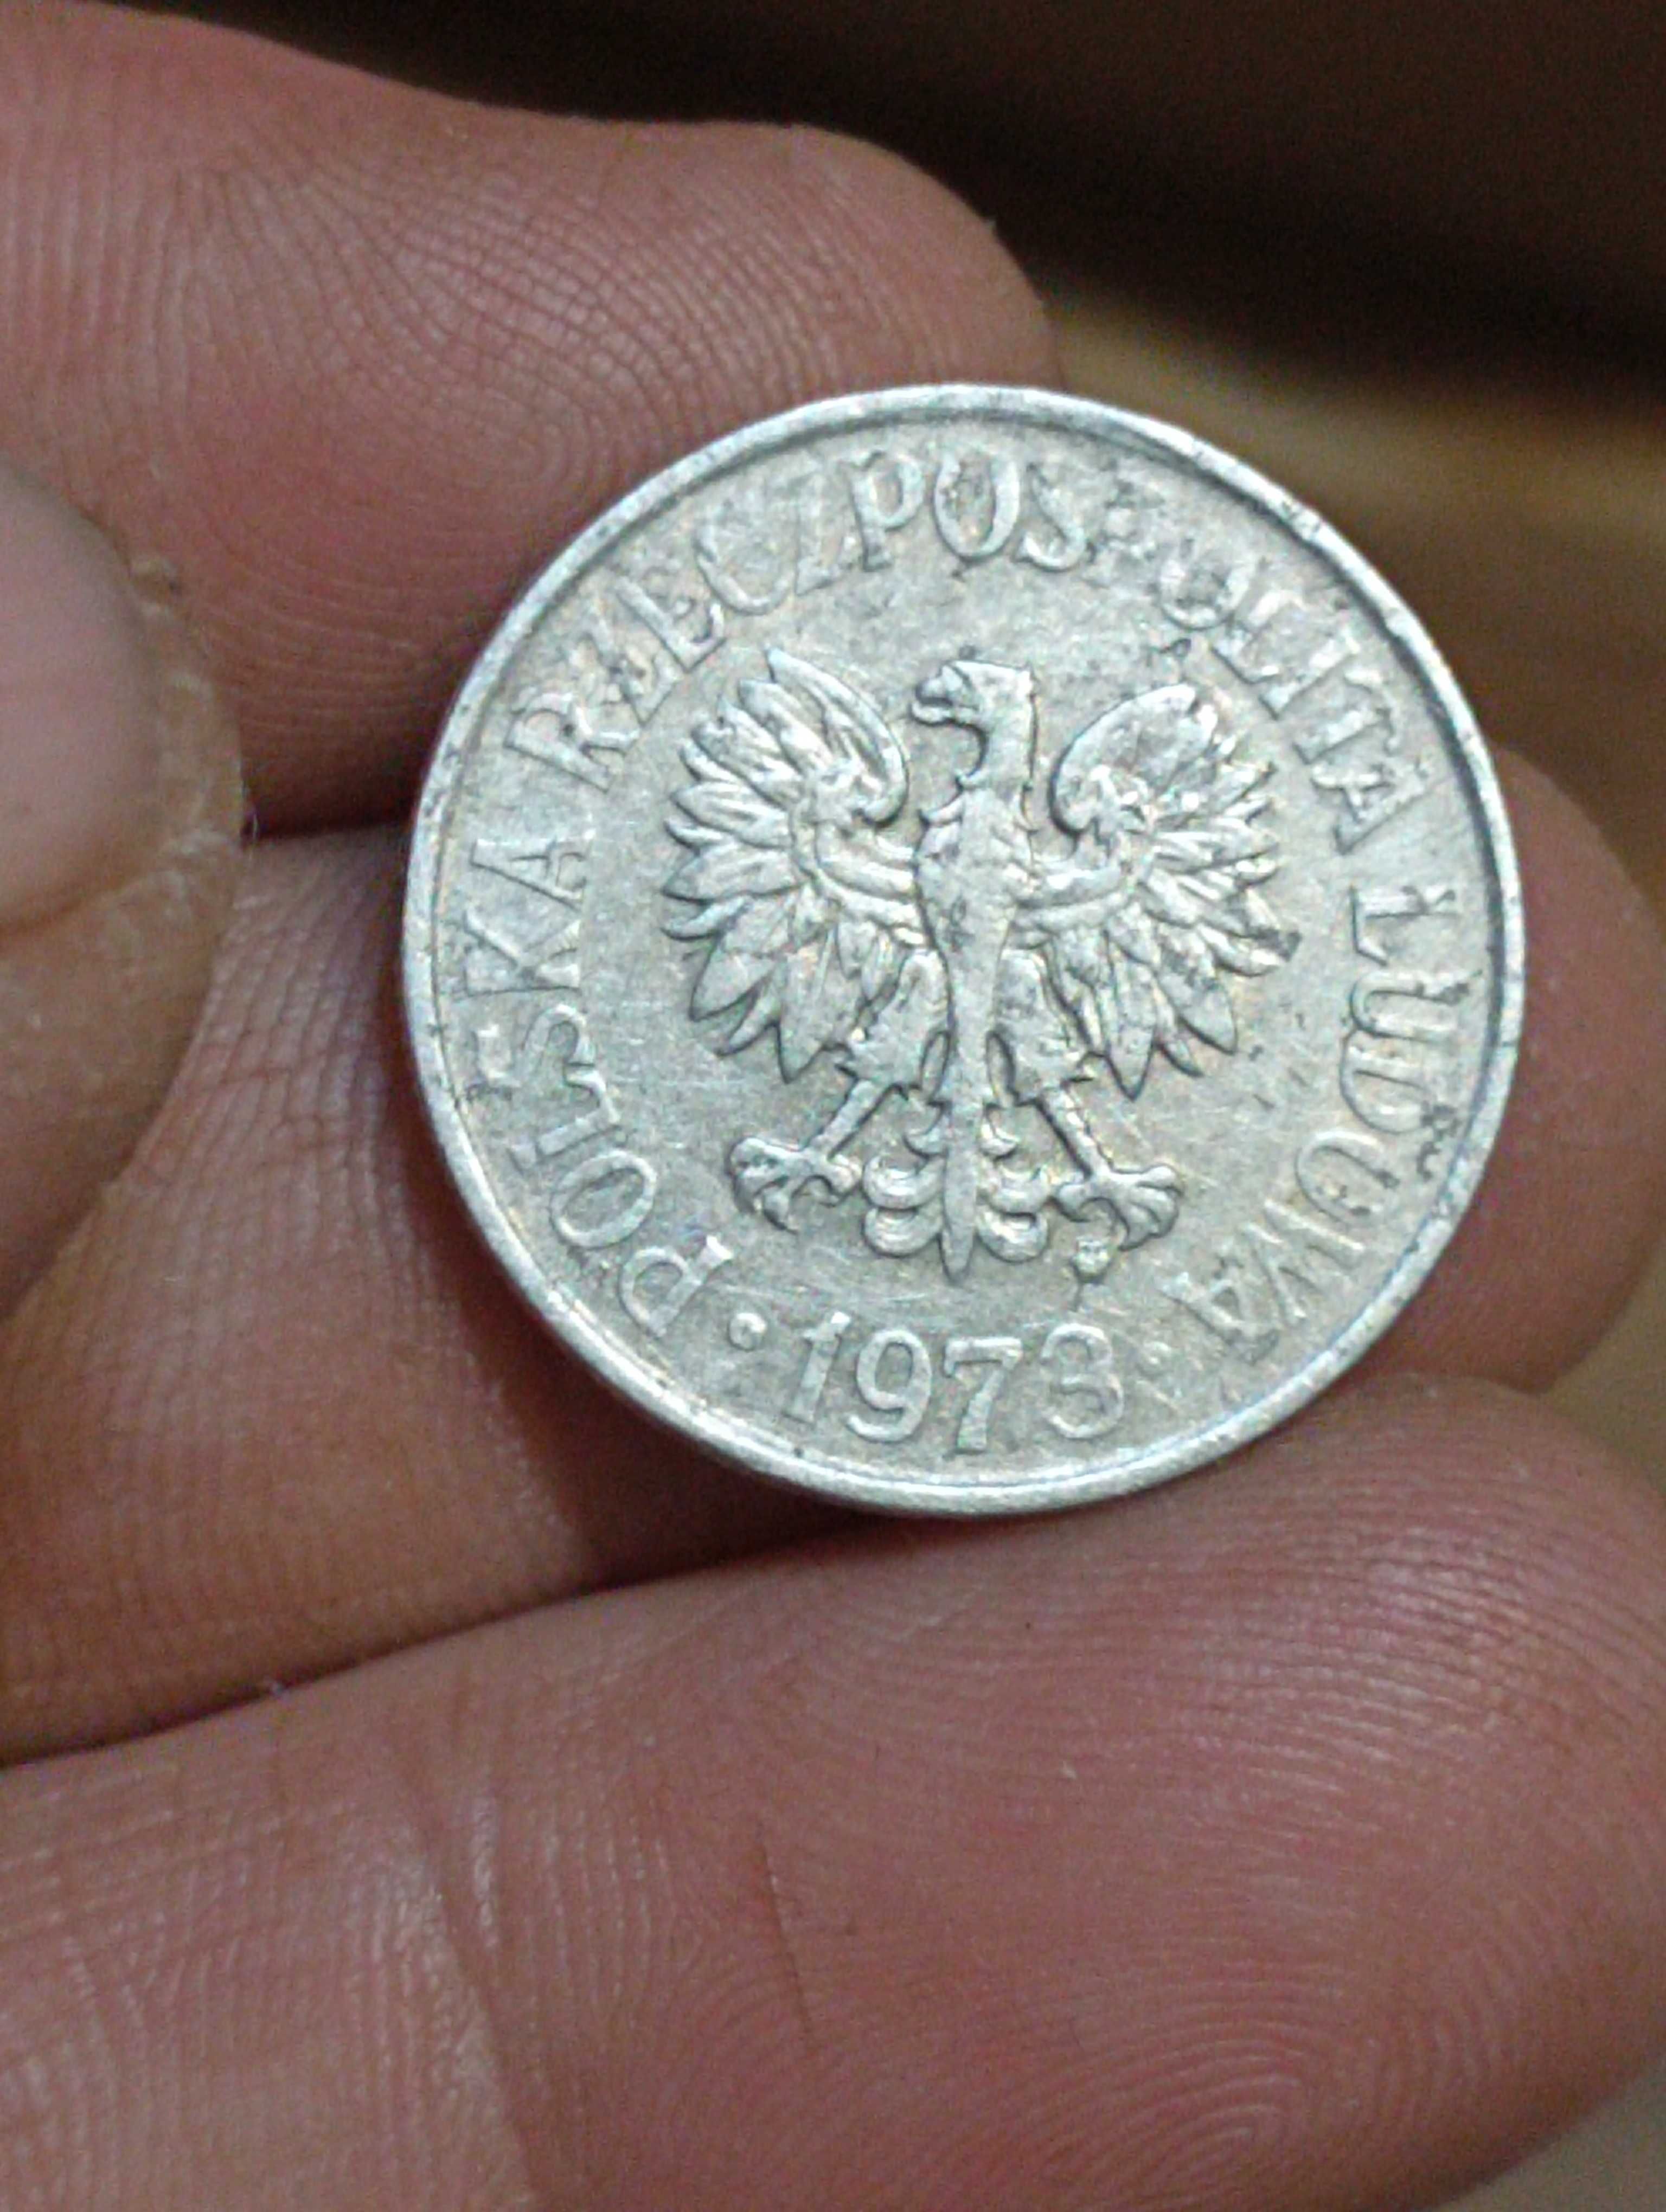 Sprzedam monete pierwsza 50 groszy 1973 r